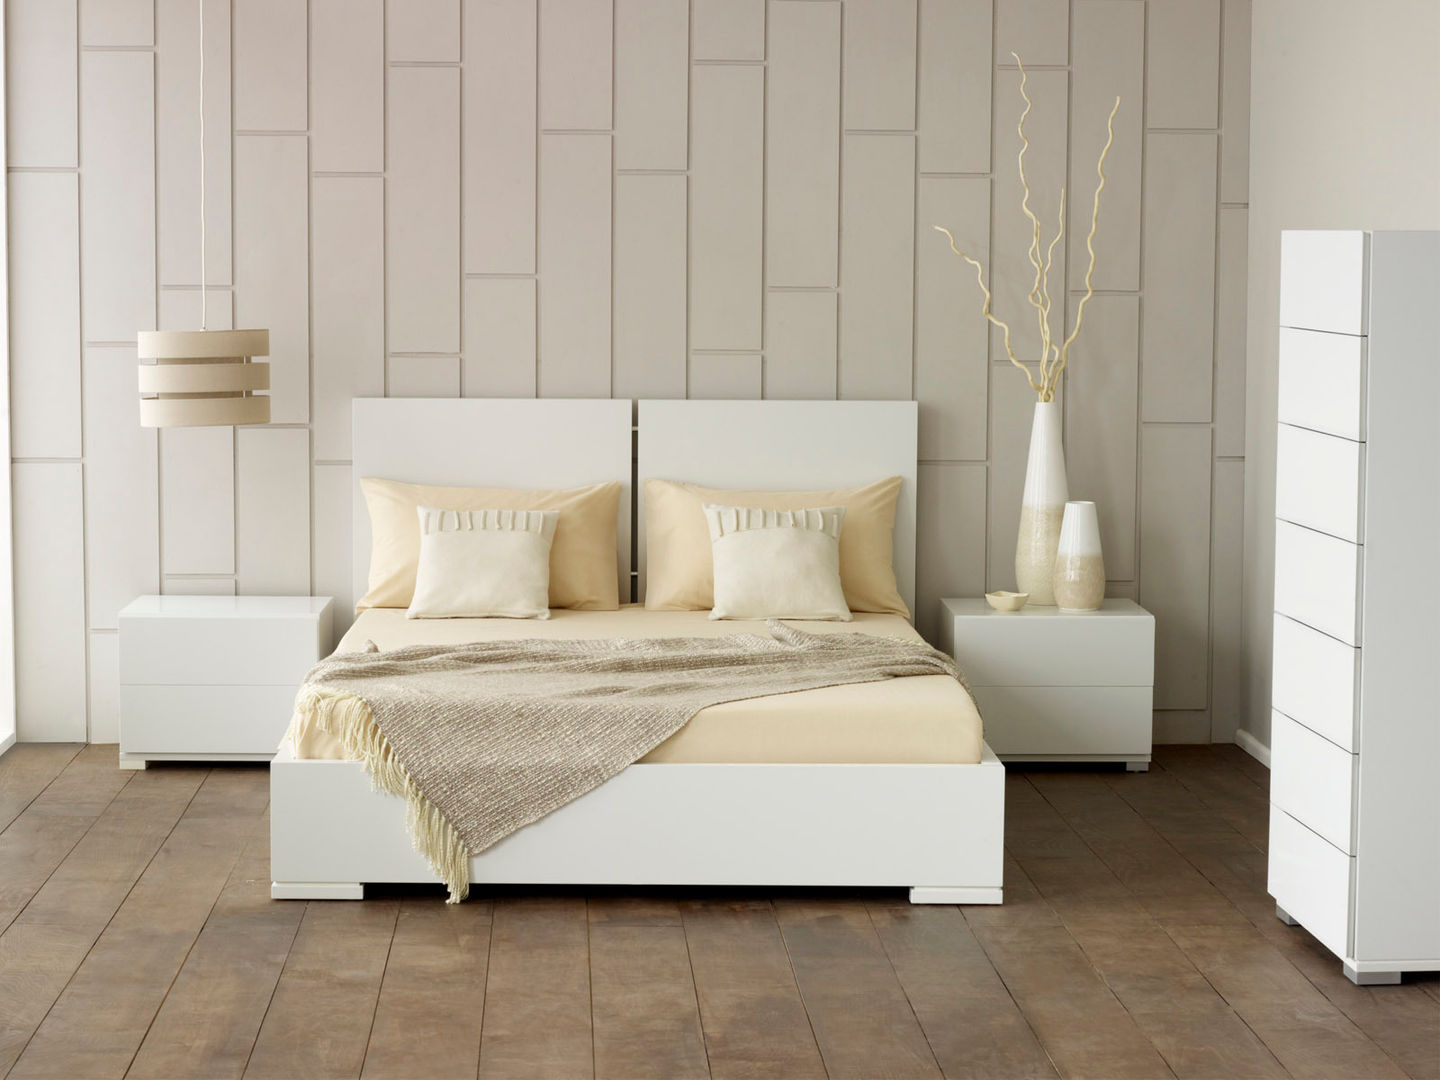 Verona White Bed homify Dormitorios de estilo moderno Camas y cabeceros